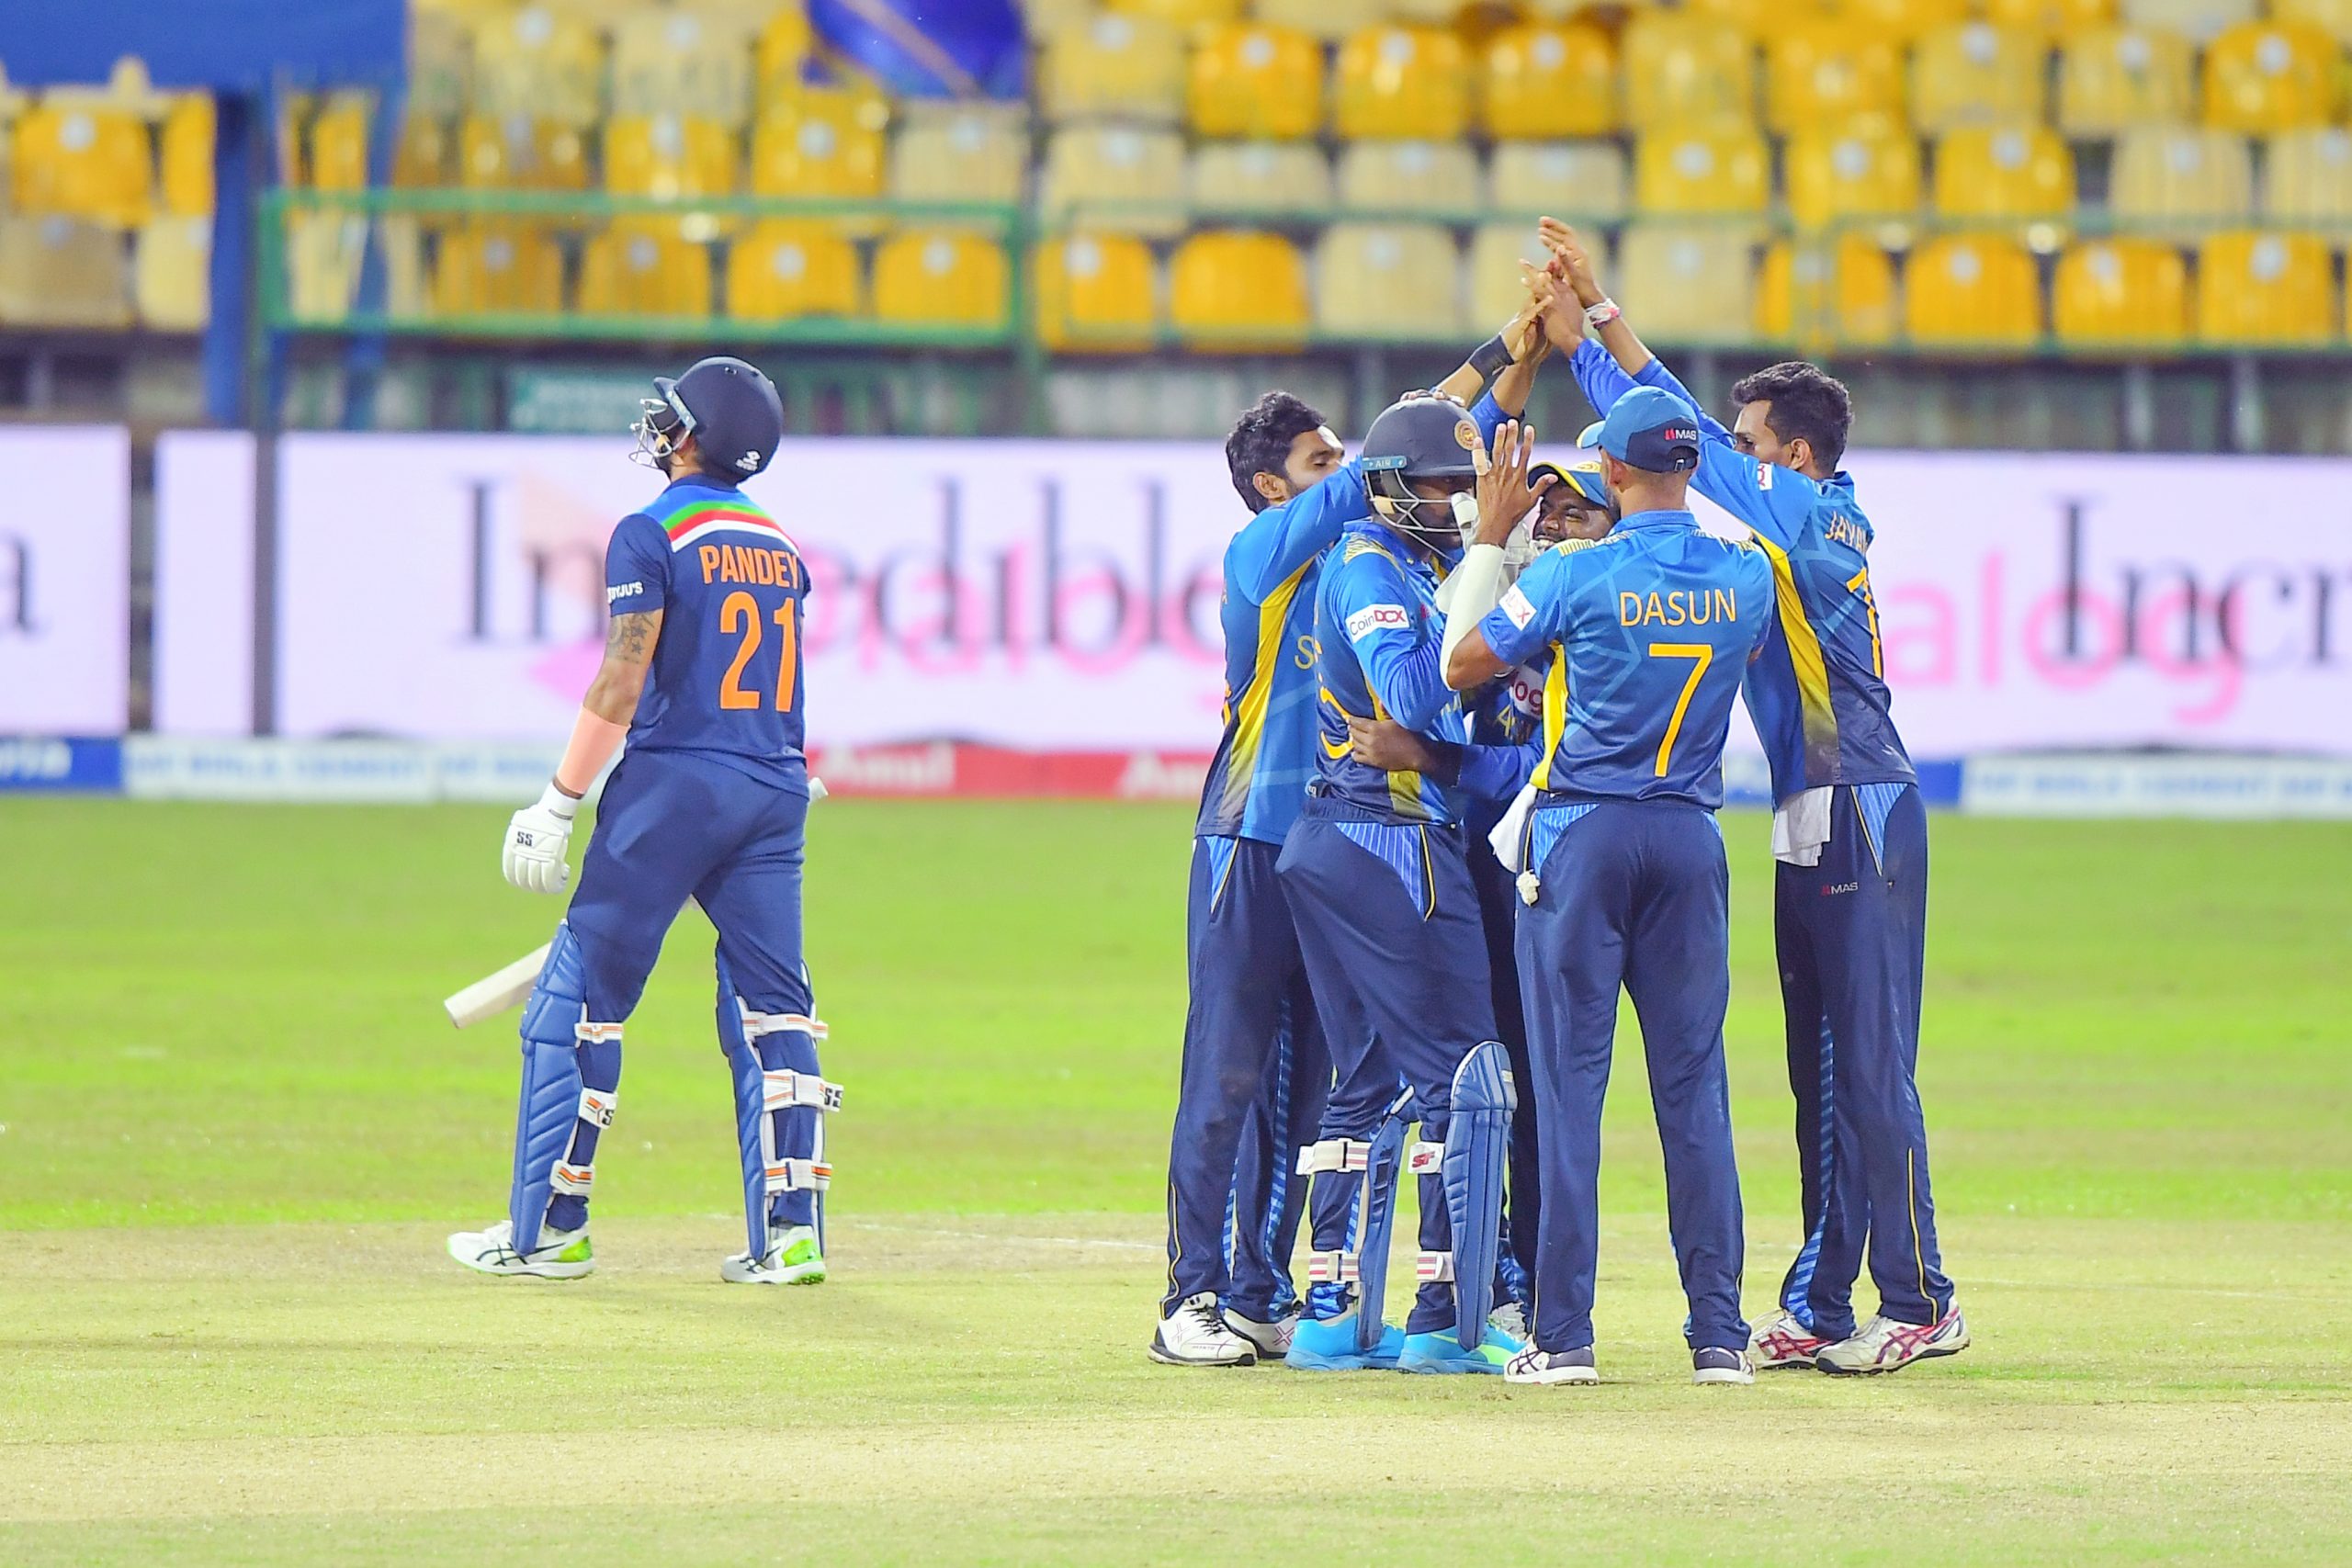 Sri Lanka down India with spin to win by 3 wkts. Avishka Fernando 76, Bhanuka Rajapaksa 65